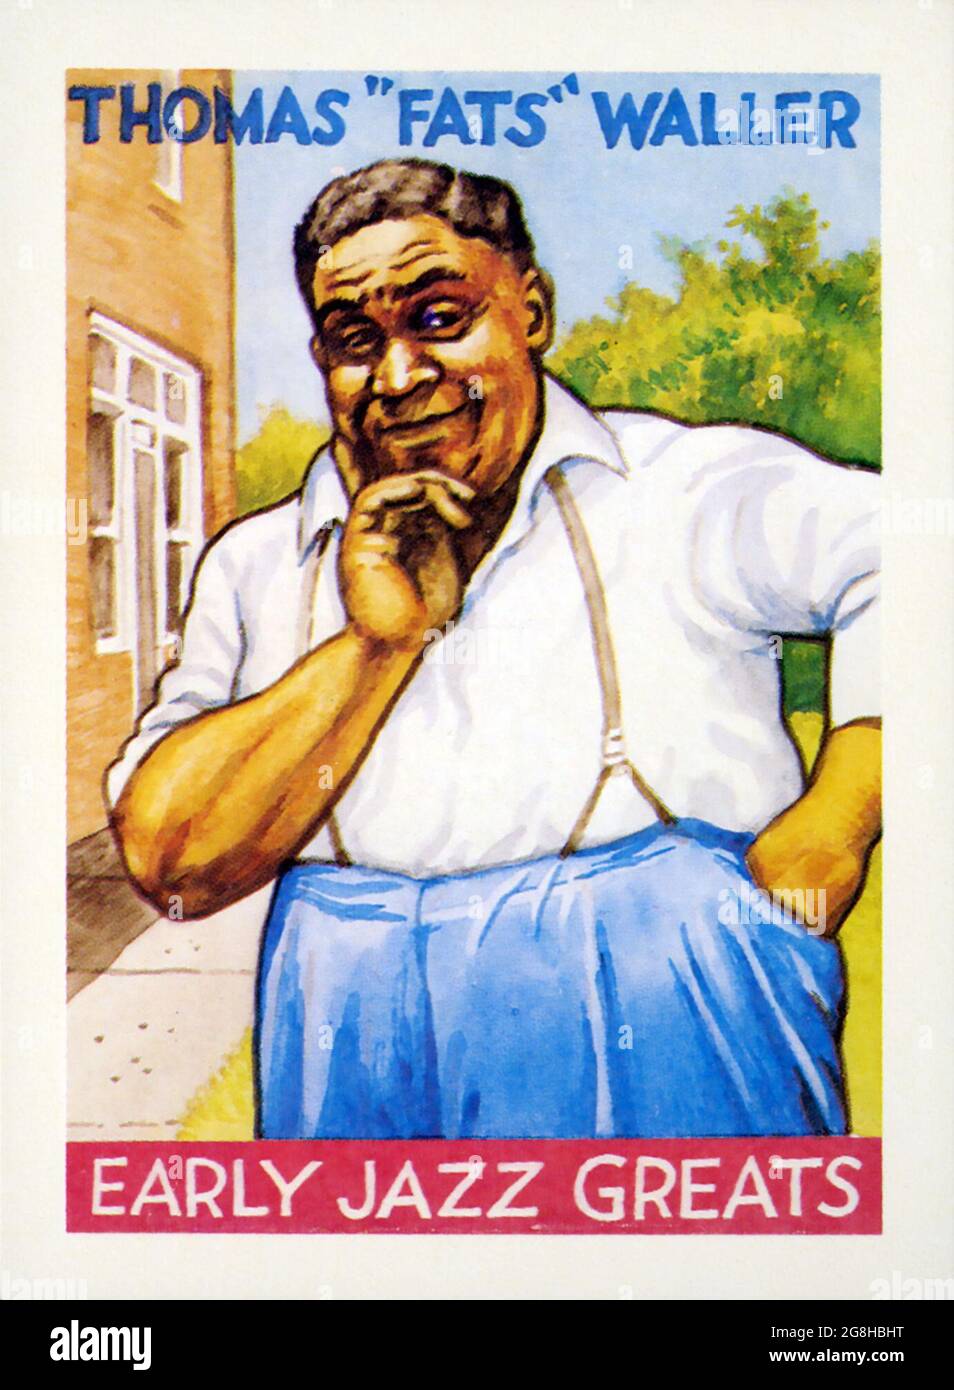 Thomas Fats Waller, dargestellt von R. Crum aus einer Reihe von Trading Cards von Größen des frühen Jazz, herausgegeben von Yazoo Records. Stockfoto